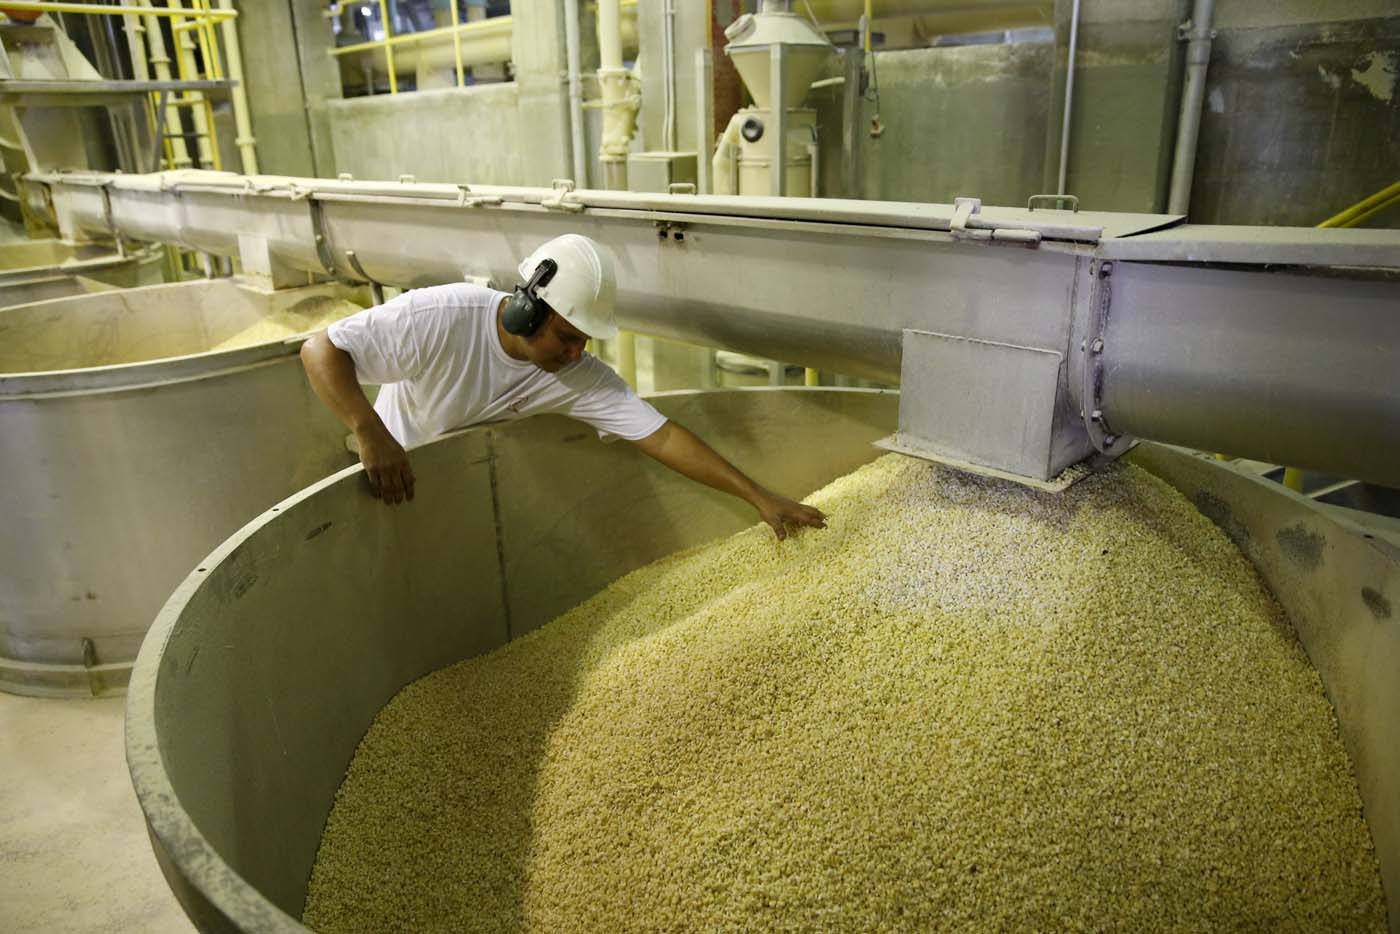 Fijar un precio para el maíz condena a la quiebra al productor nacional, alerta Fedeagro